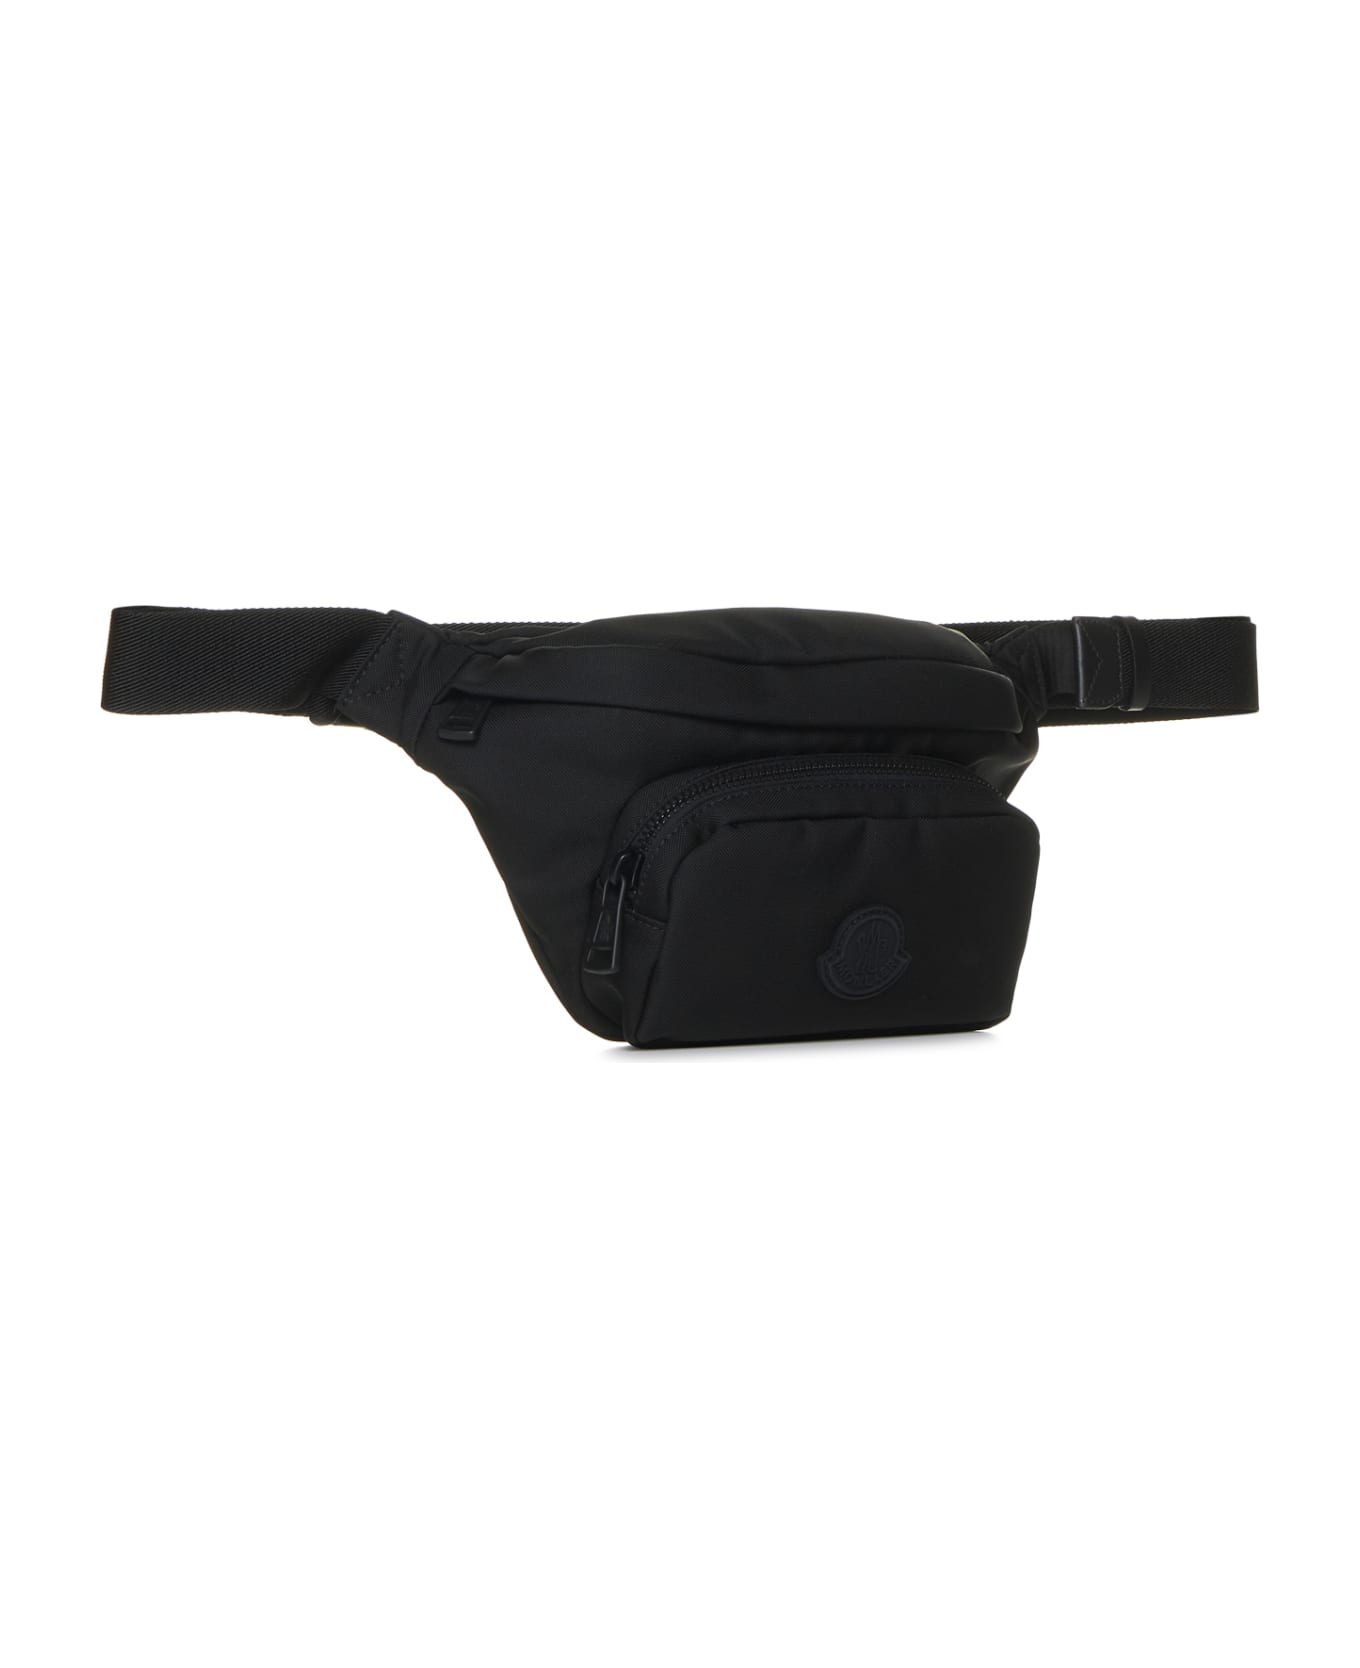 Moncler Shoulder Bag - Black